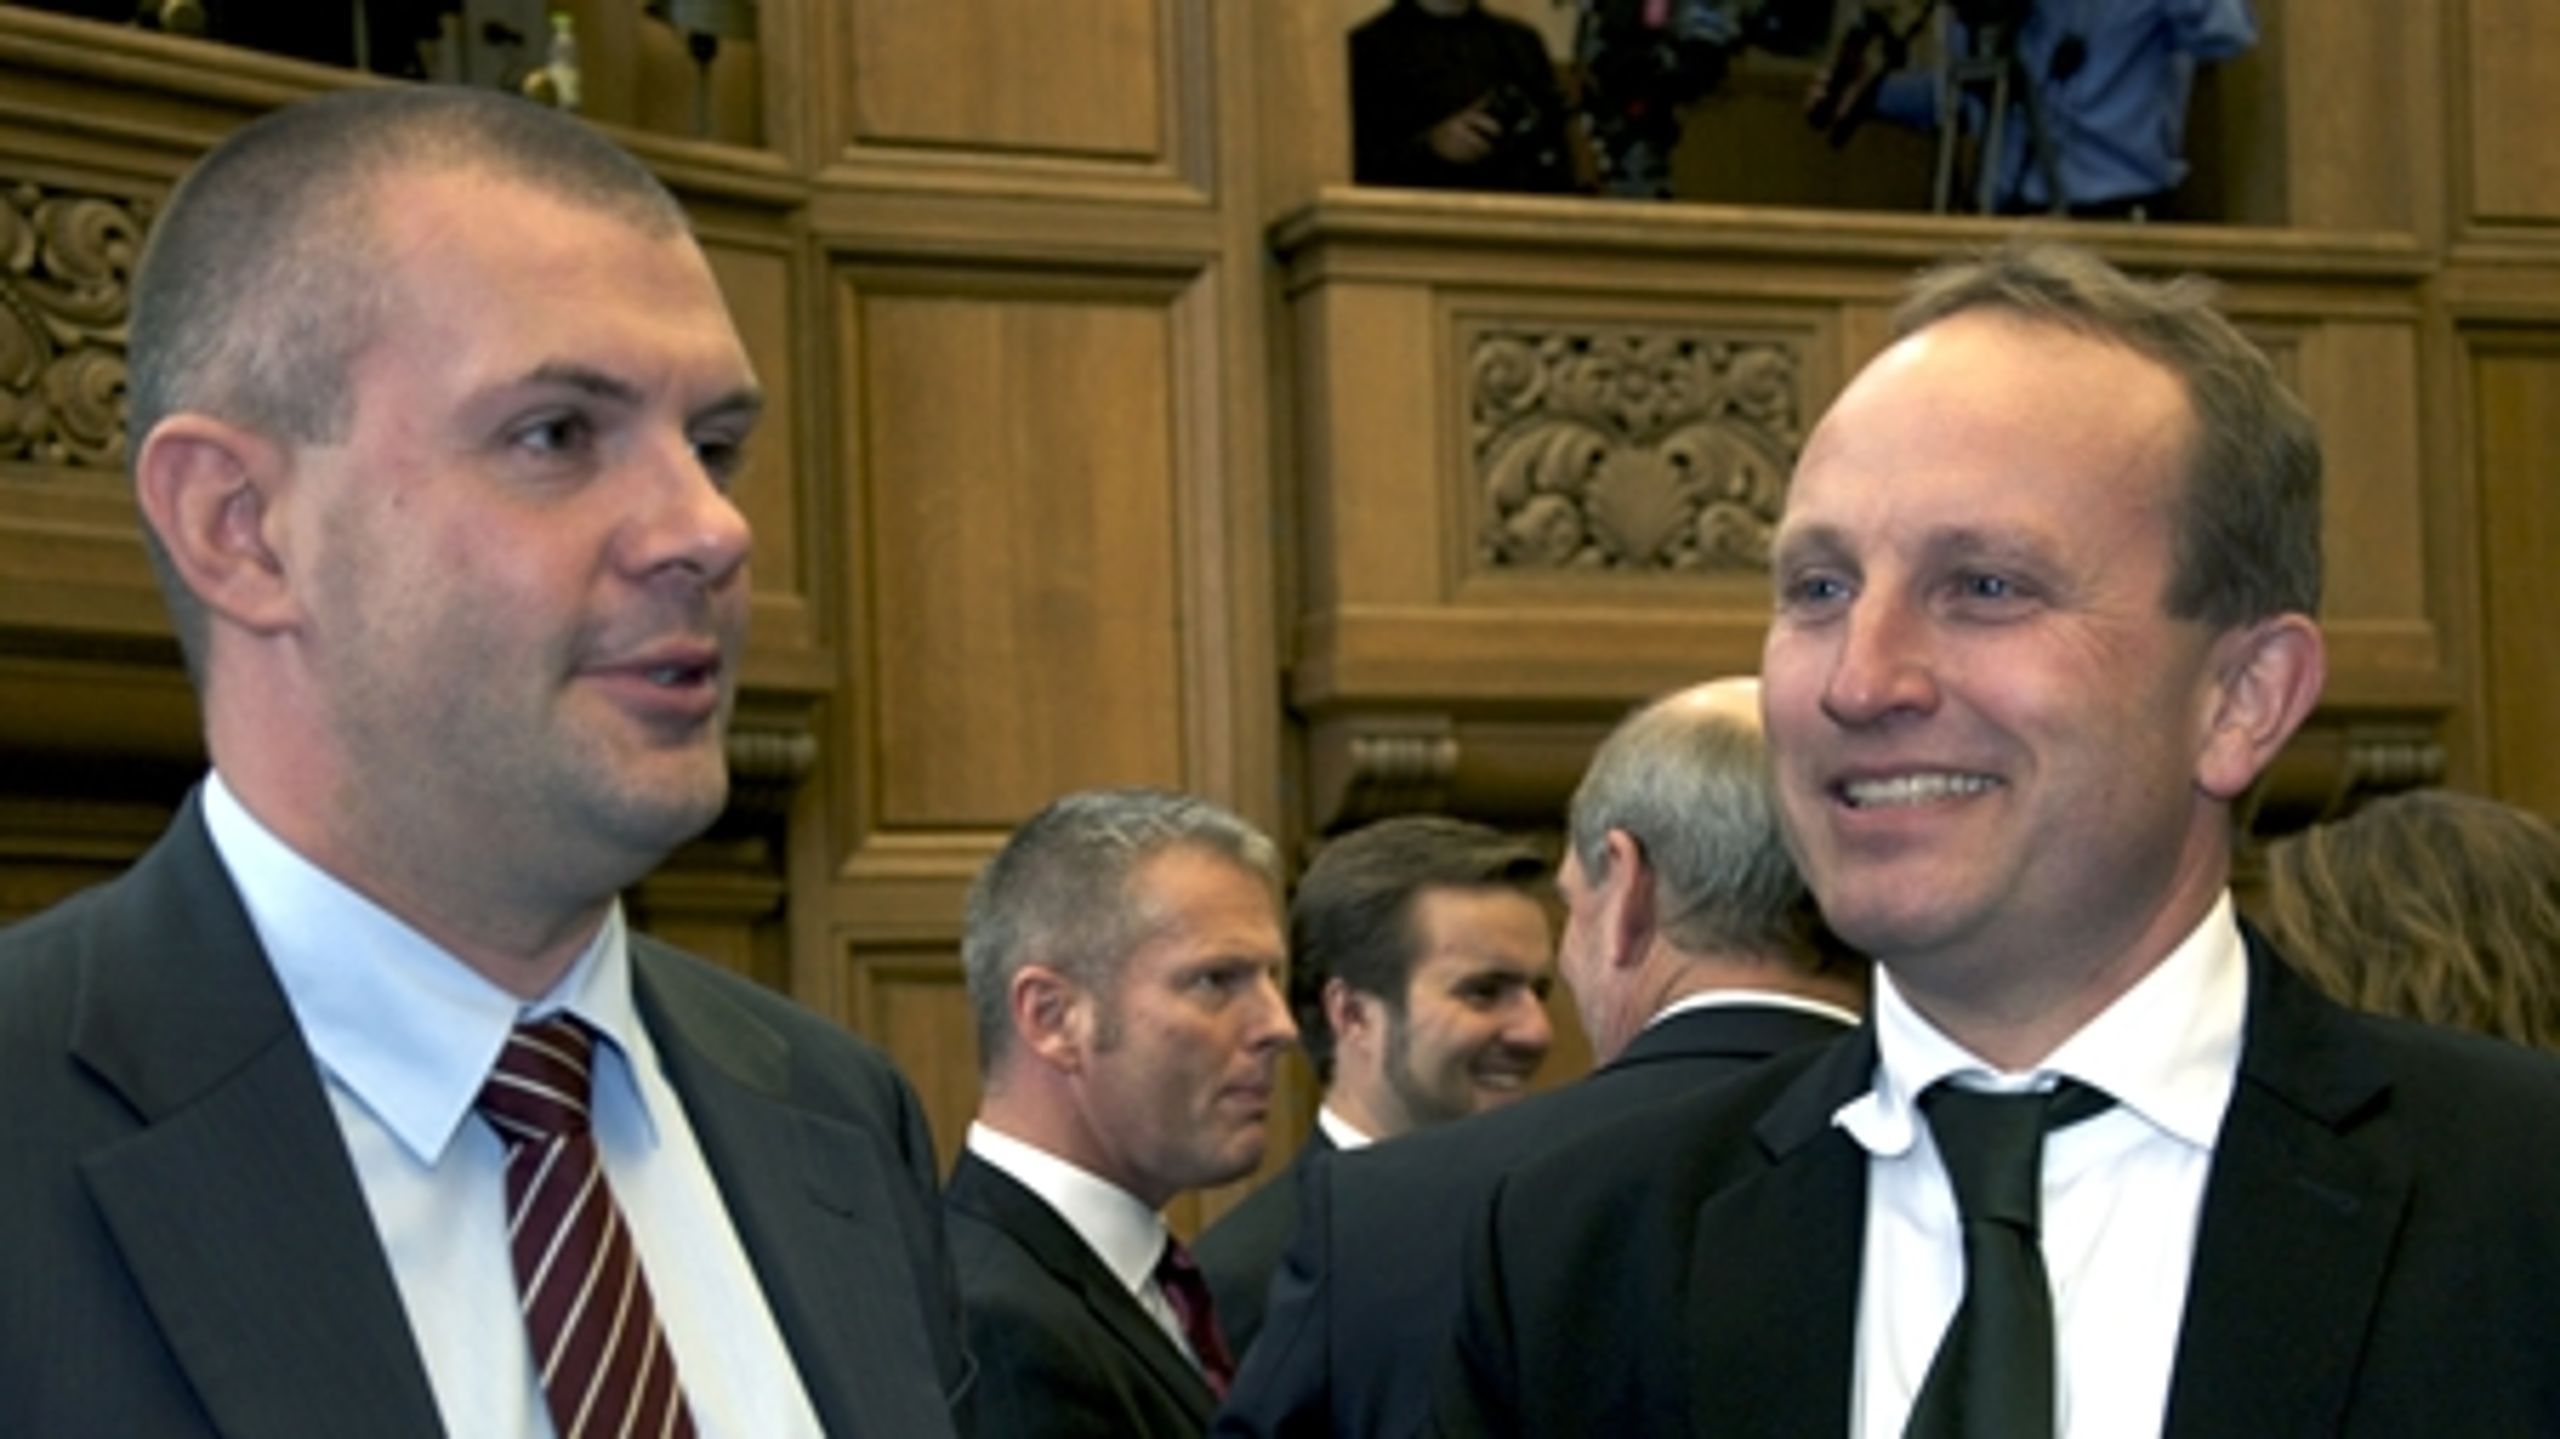 Klima- og energiminister Martin Lidegaard (R) og finansminister Bjarne Corydon (S) ved Folketingets åbning. Begge vurderes til at være blandt regeringens mest troværdige ministre.   